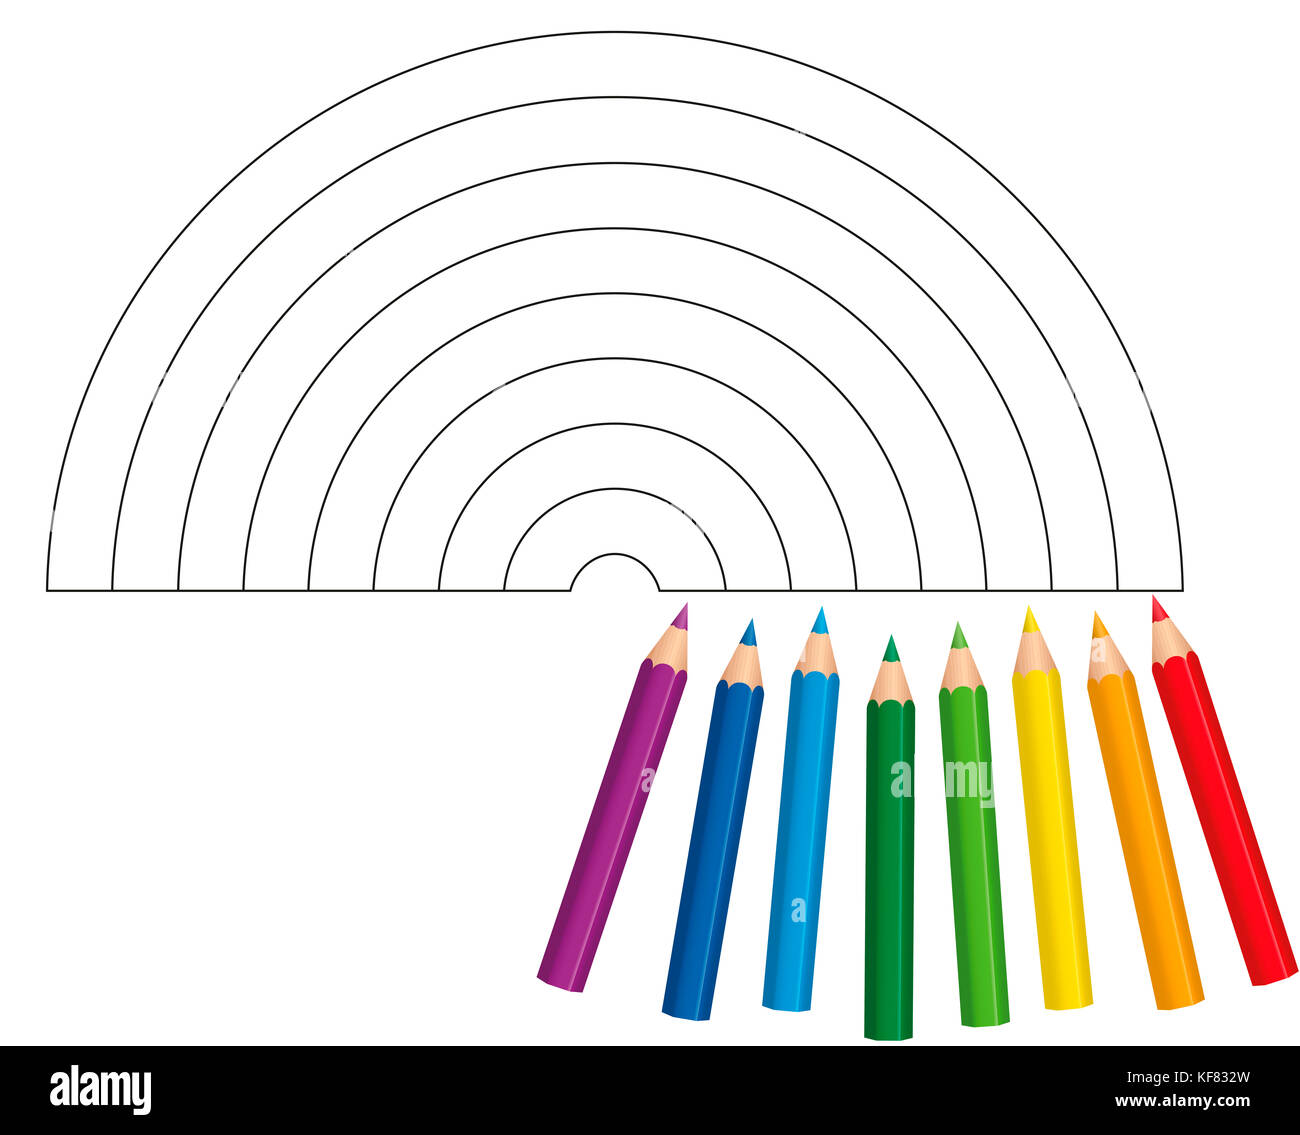 Färbung Bild mit acht kurze baby Buntstifte, die zeigen, welche Farben für einen hell und glänzend Regenbogen verwendet werden - Abbildung auf weißem Hintergrund. Stockfoto